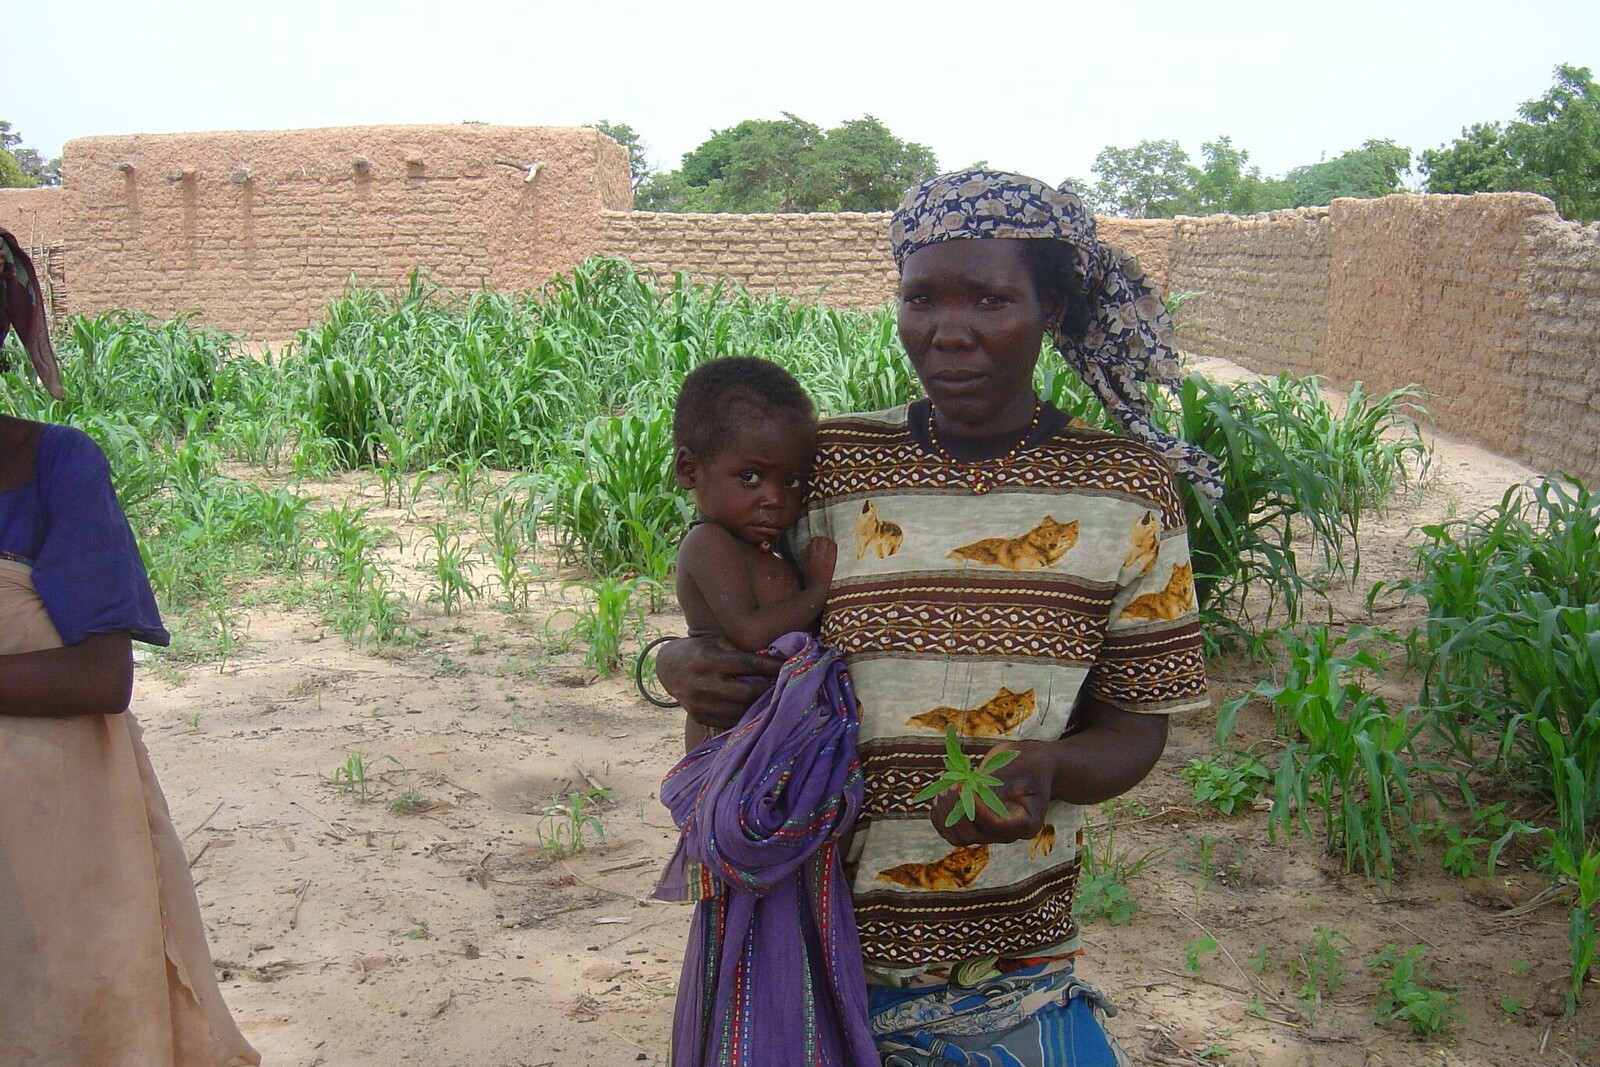 Während einer Dürre in Afrika wird Nahrung knapp. Eine Frau steht mit ihrem Kind vor einem trockenen Feld.